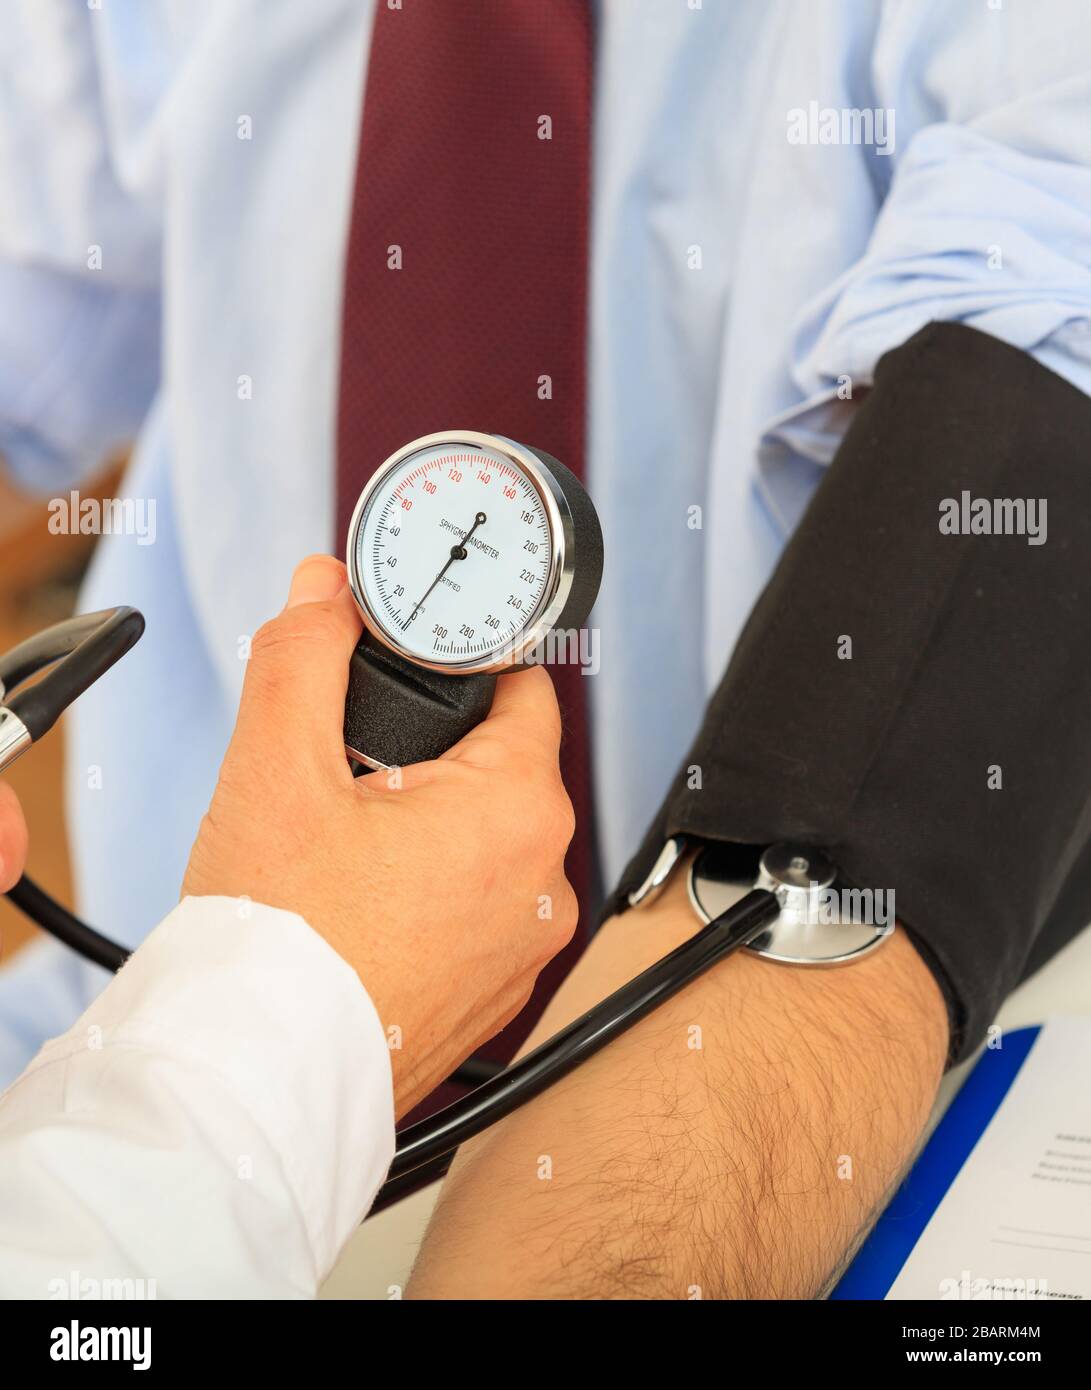 Ipertensione, concetto di controllo medico. Medico GP che controlla la pressione sanguigna del paziente, vista in primo piano Foto Stock